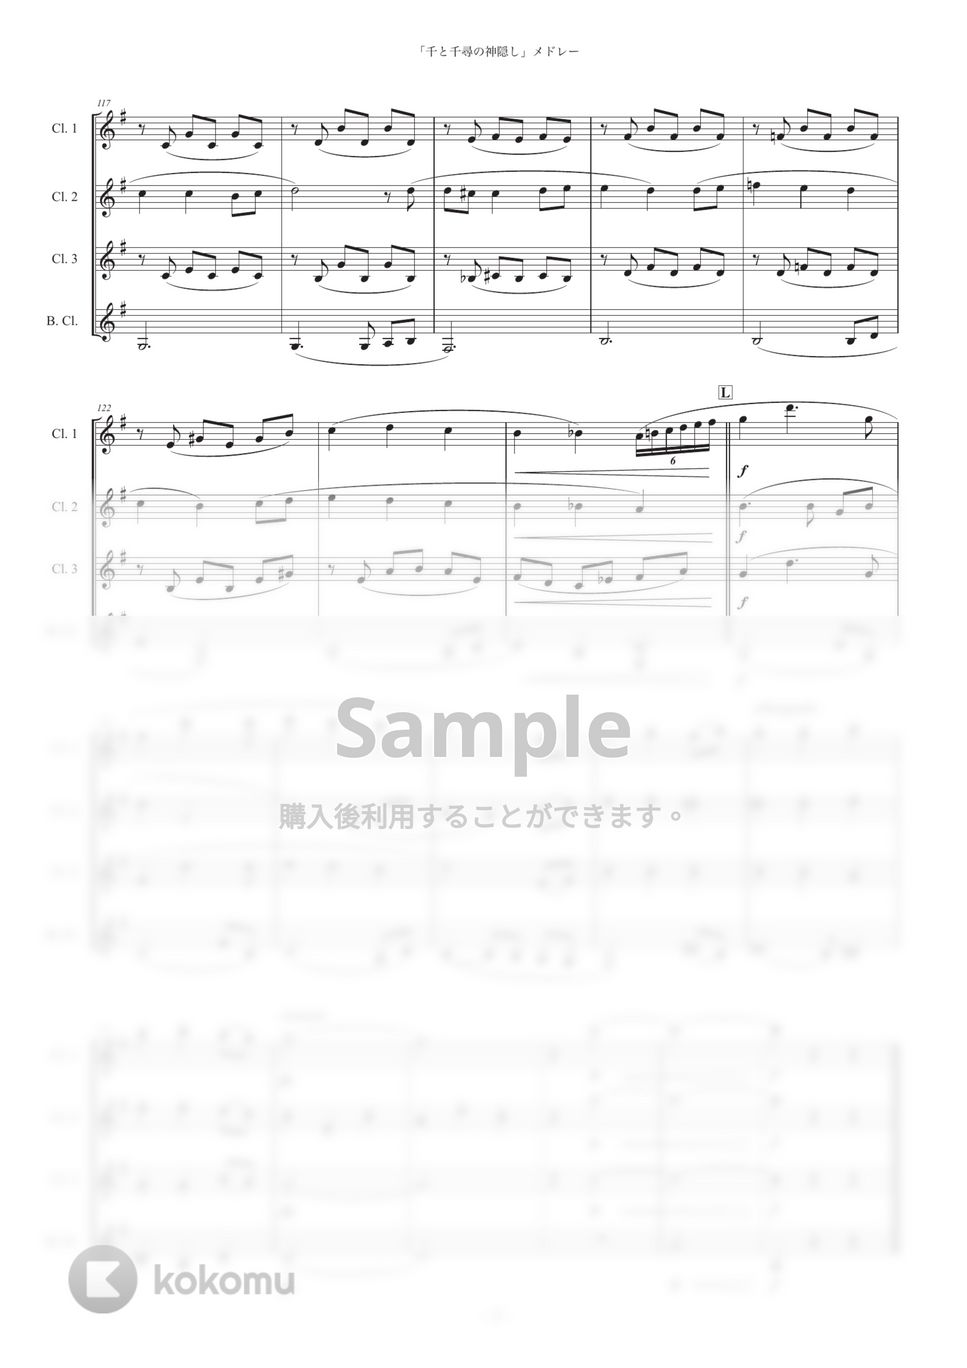 久石譲 - 「千と千尋の神隠し」3曲集 (クラリネット四重奏) 楽譜 by Musik Kanal